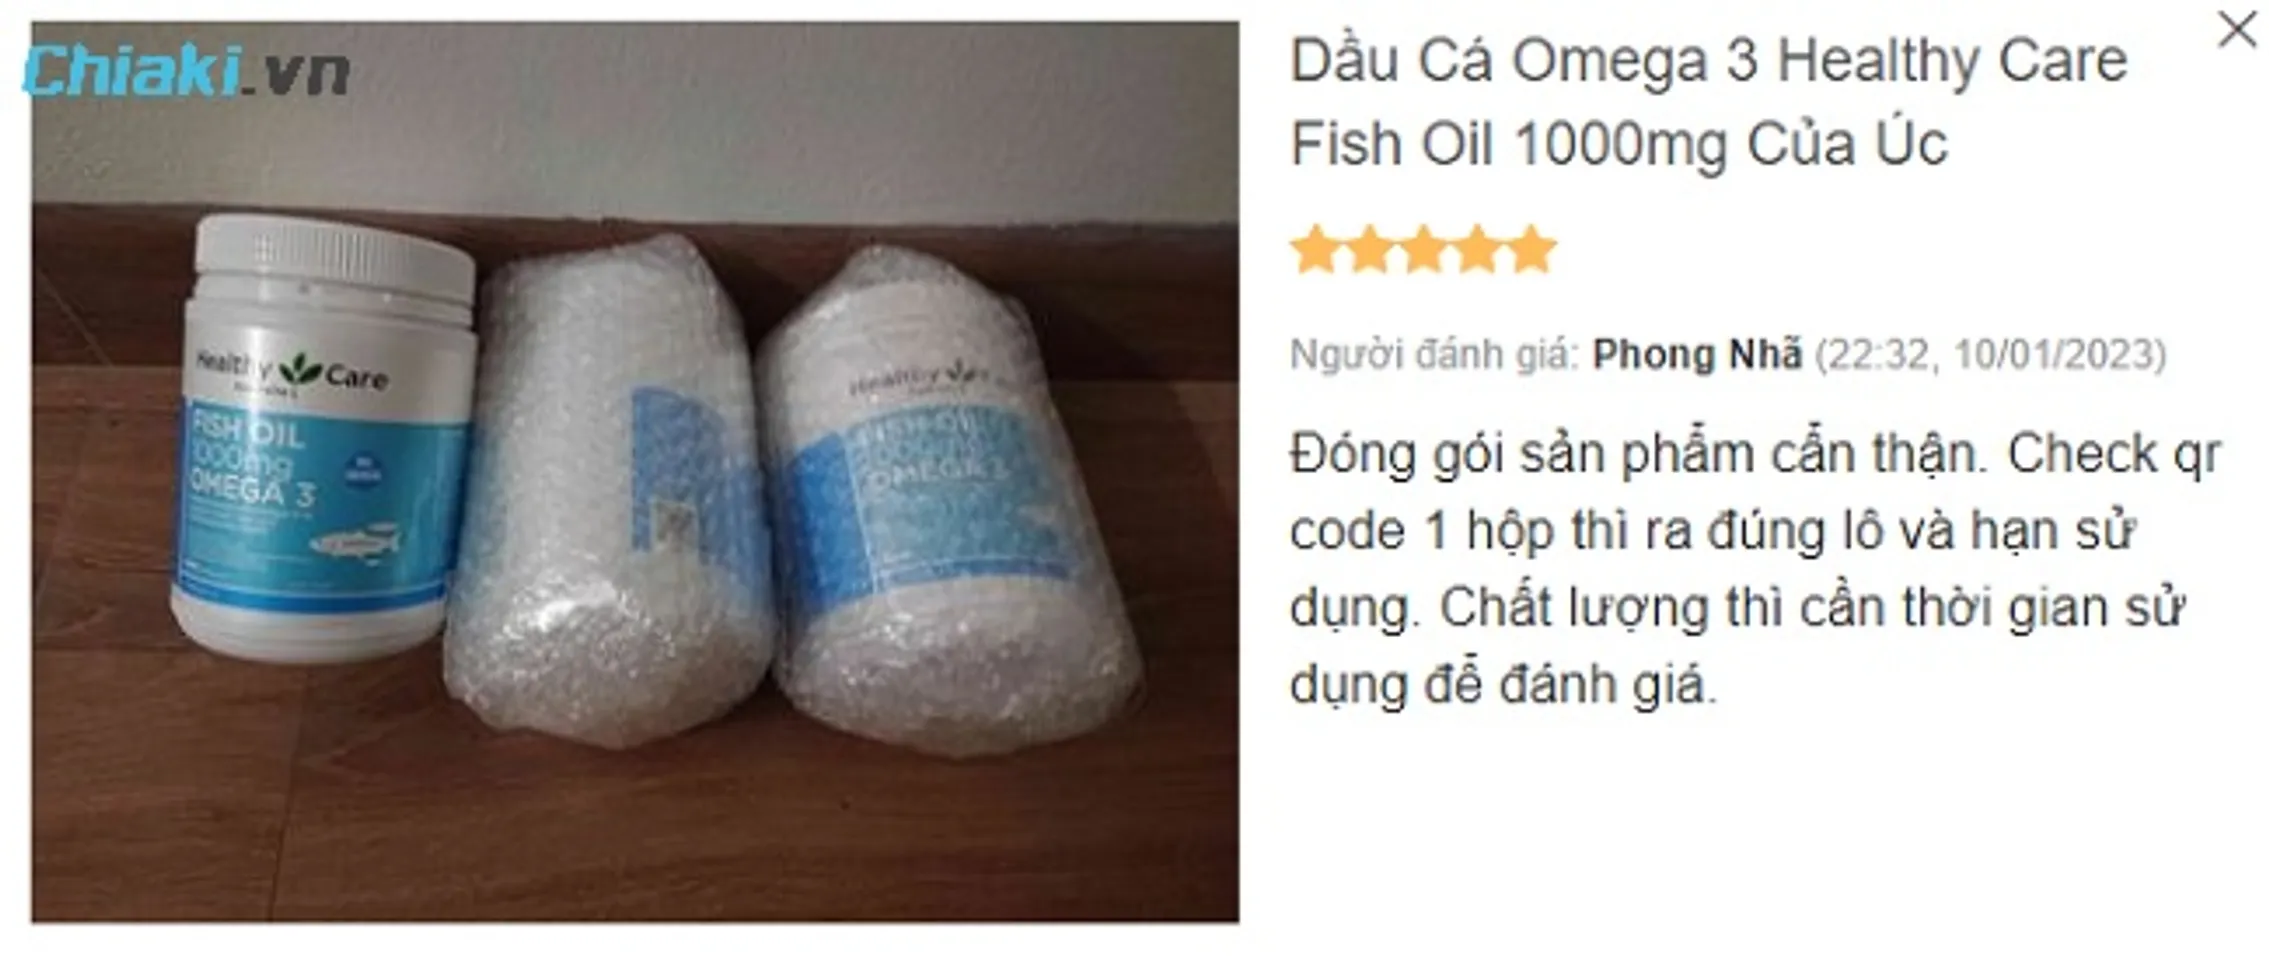 Review dầu cá Omega-3 Fish Oil 1000mg Úc từ người mua